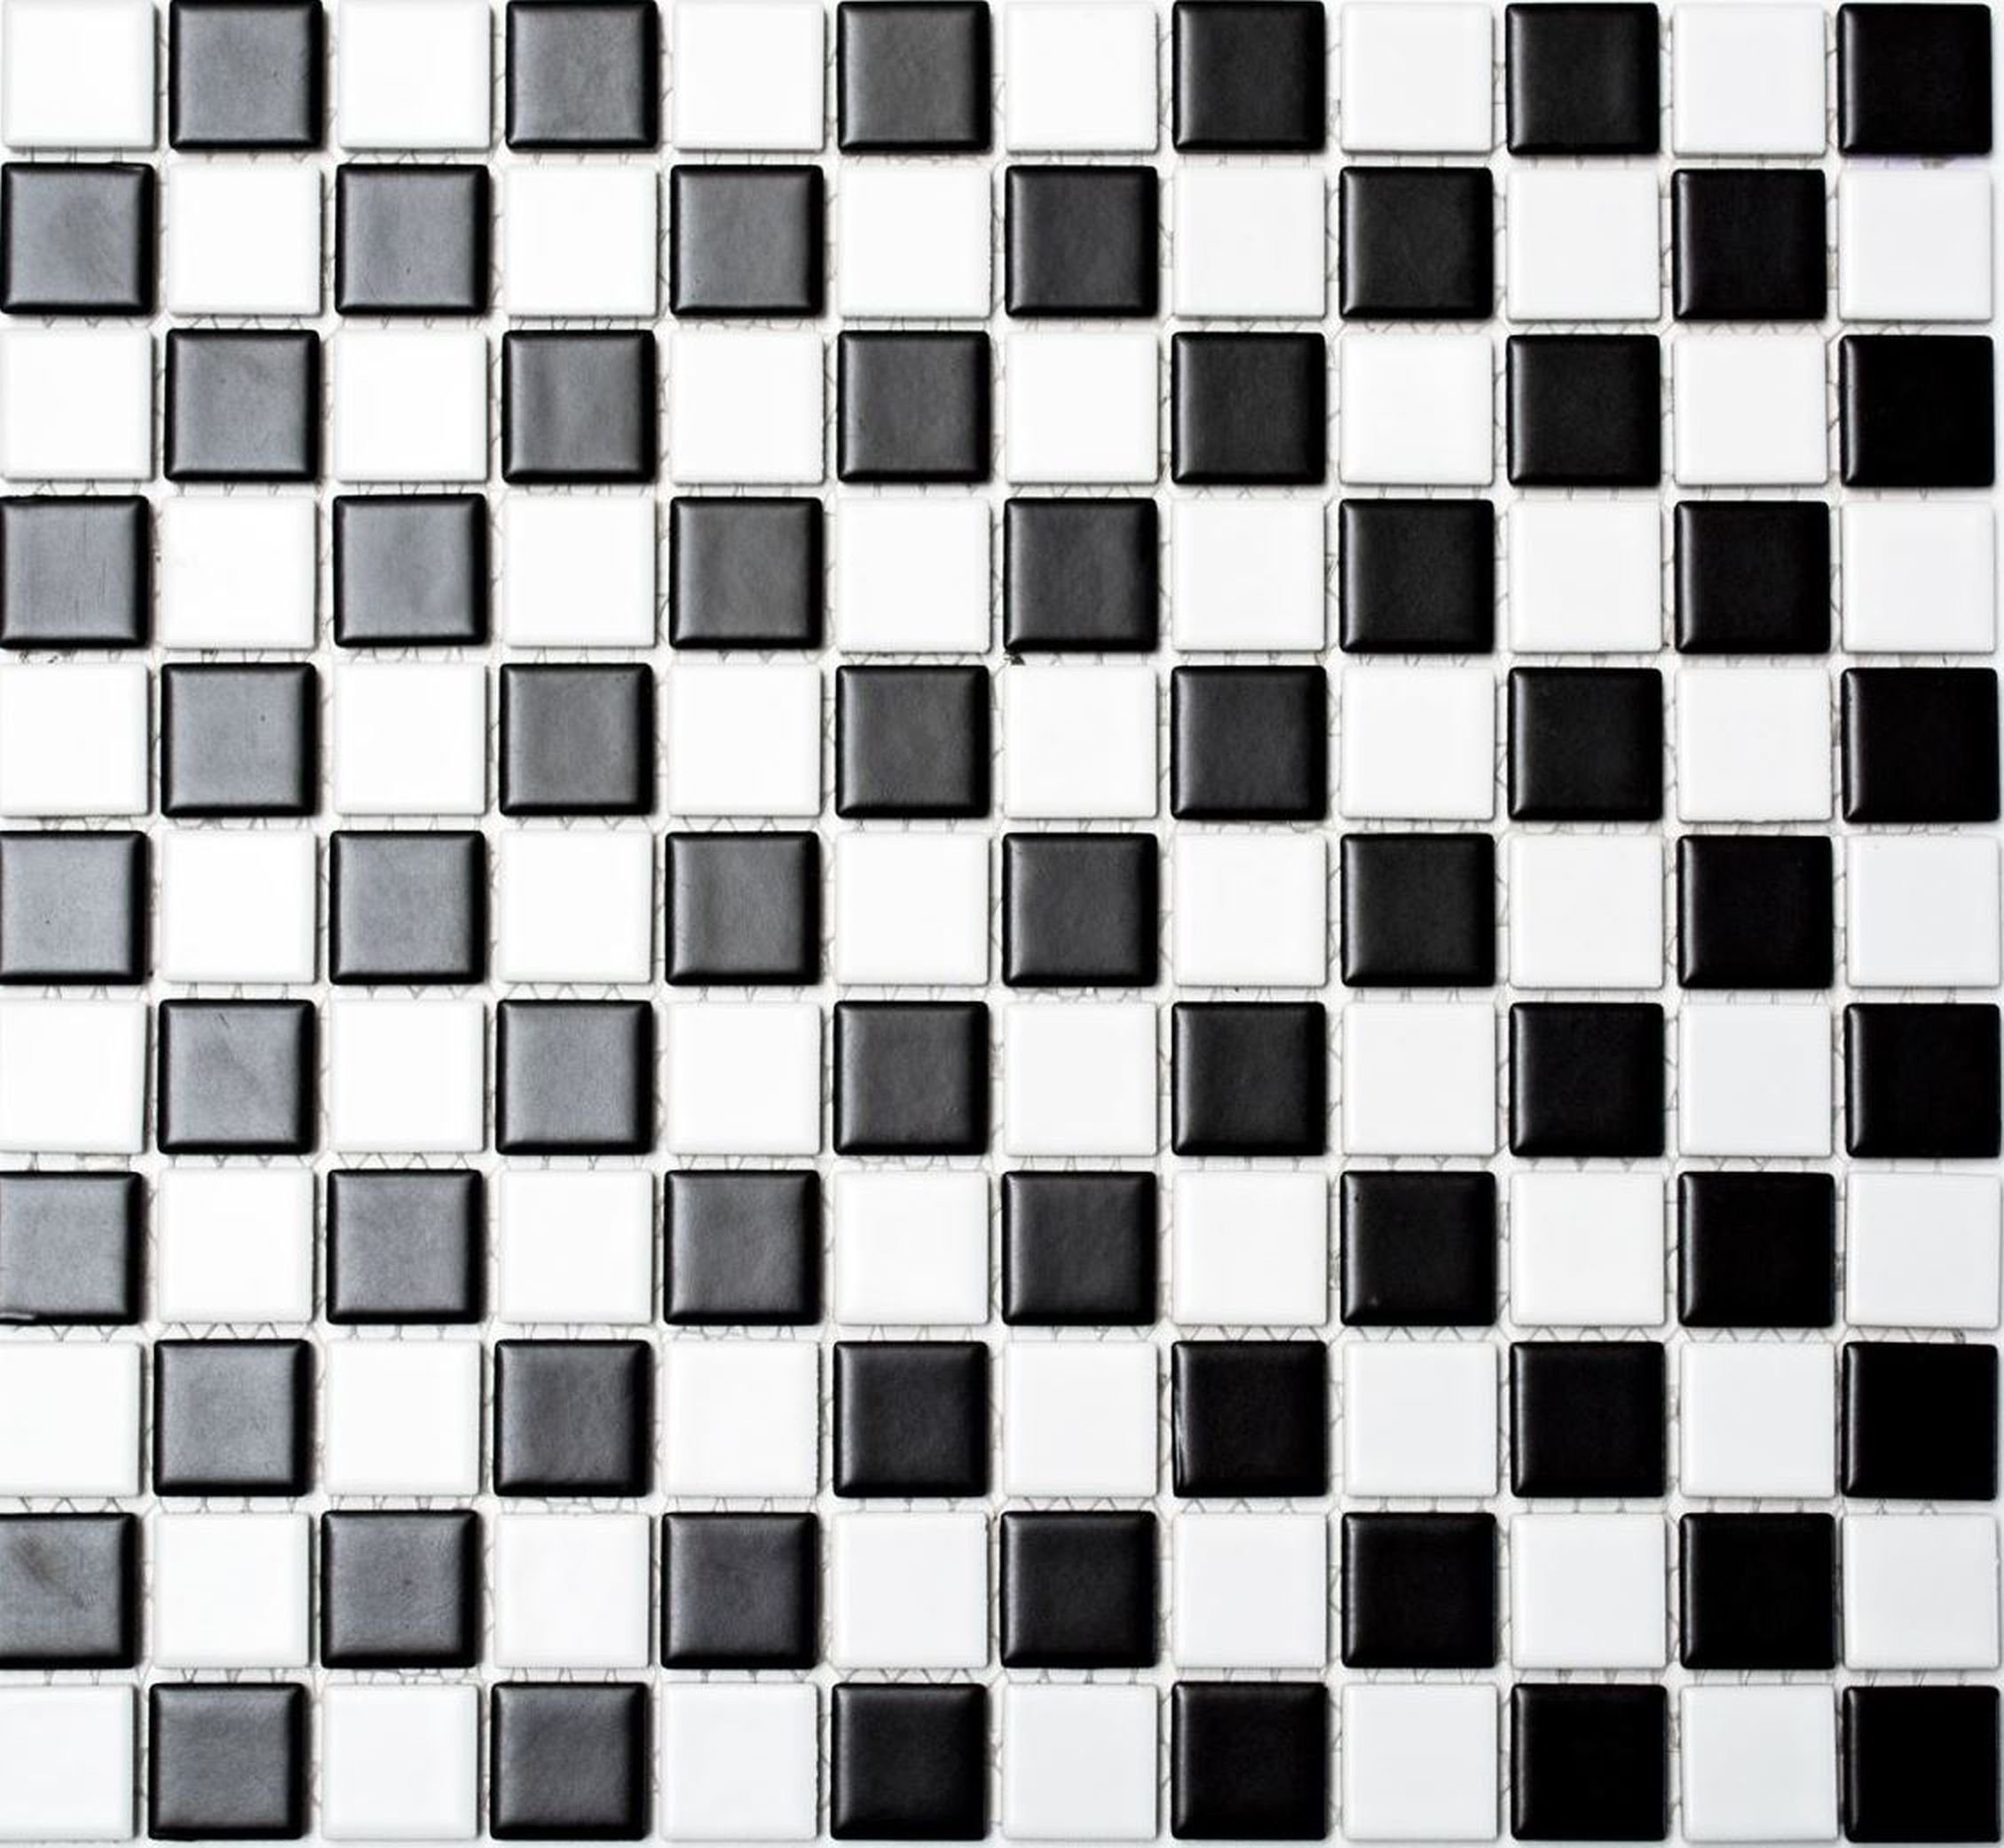 Mosani Mosaikfliesen Keramik Mosaik Schachbrett schwarz weiß matt Mosaikfliese